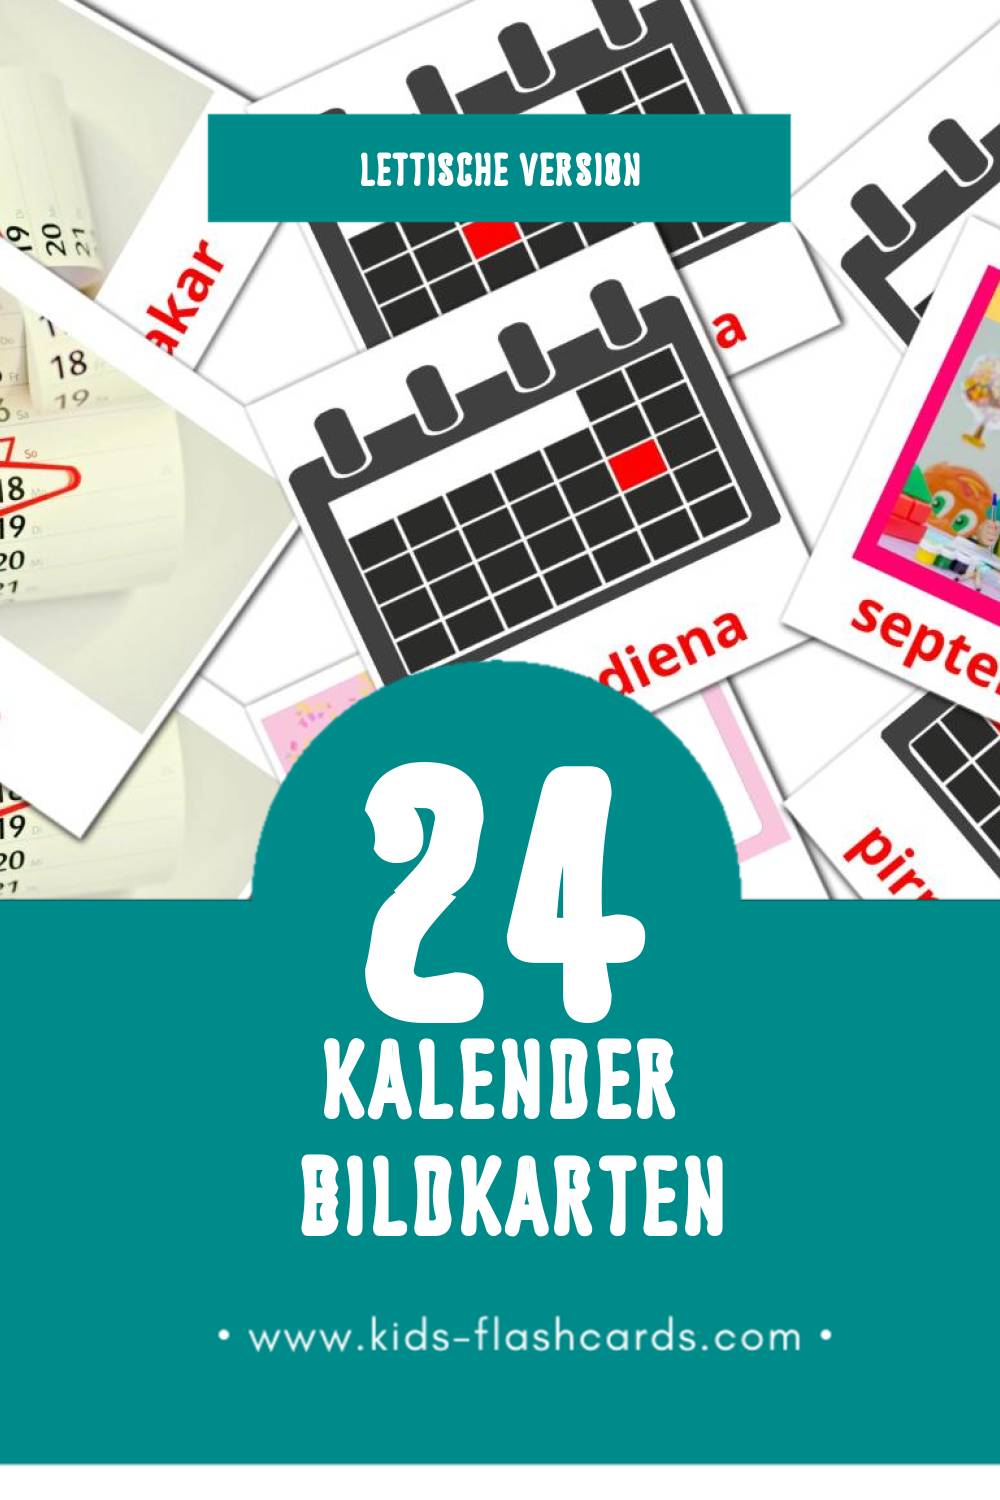 Visual Kalendārs Flashcards für Kleinkinder (24 Karten in Lettisch)